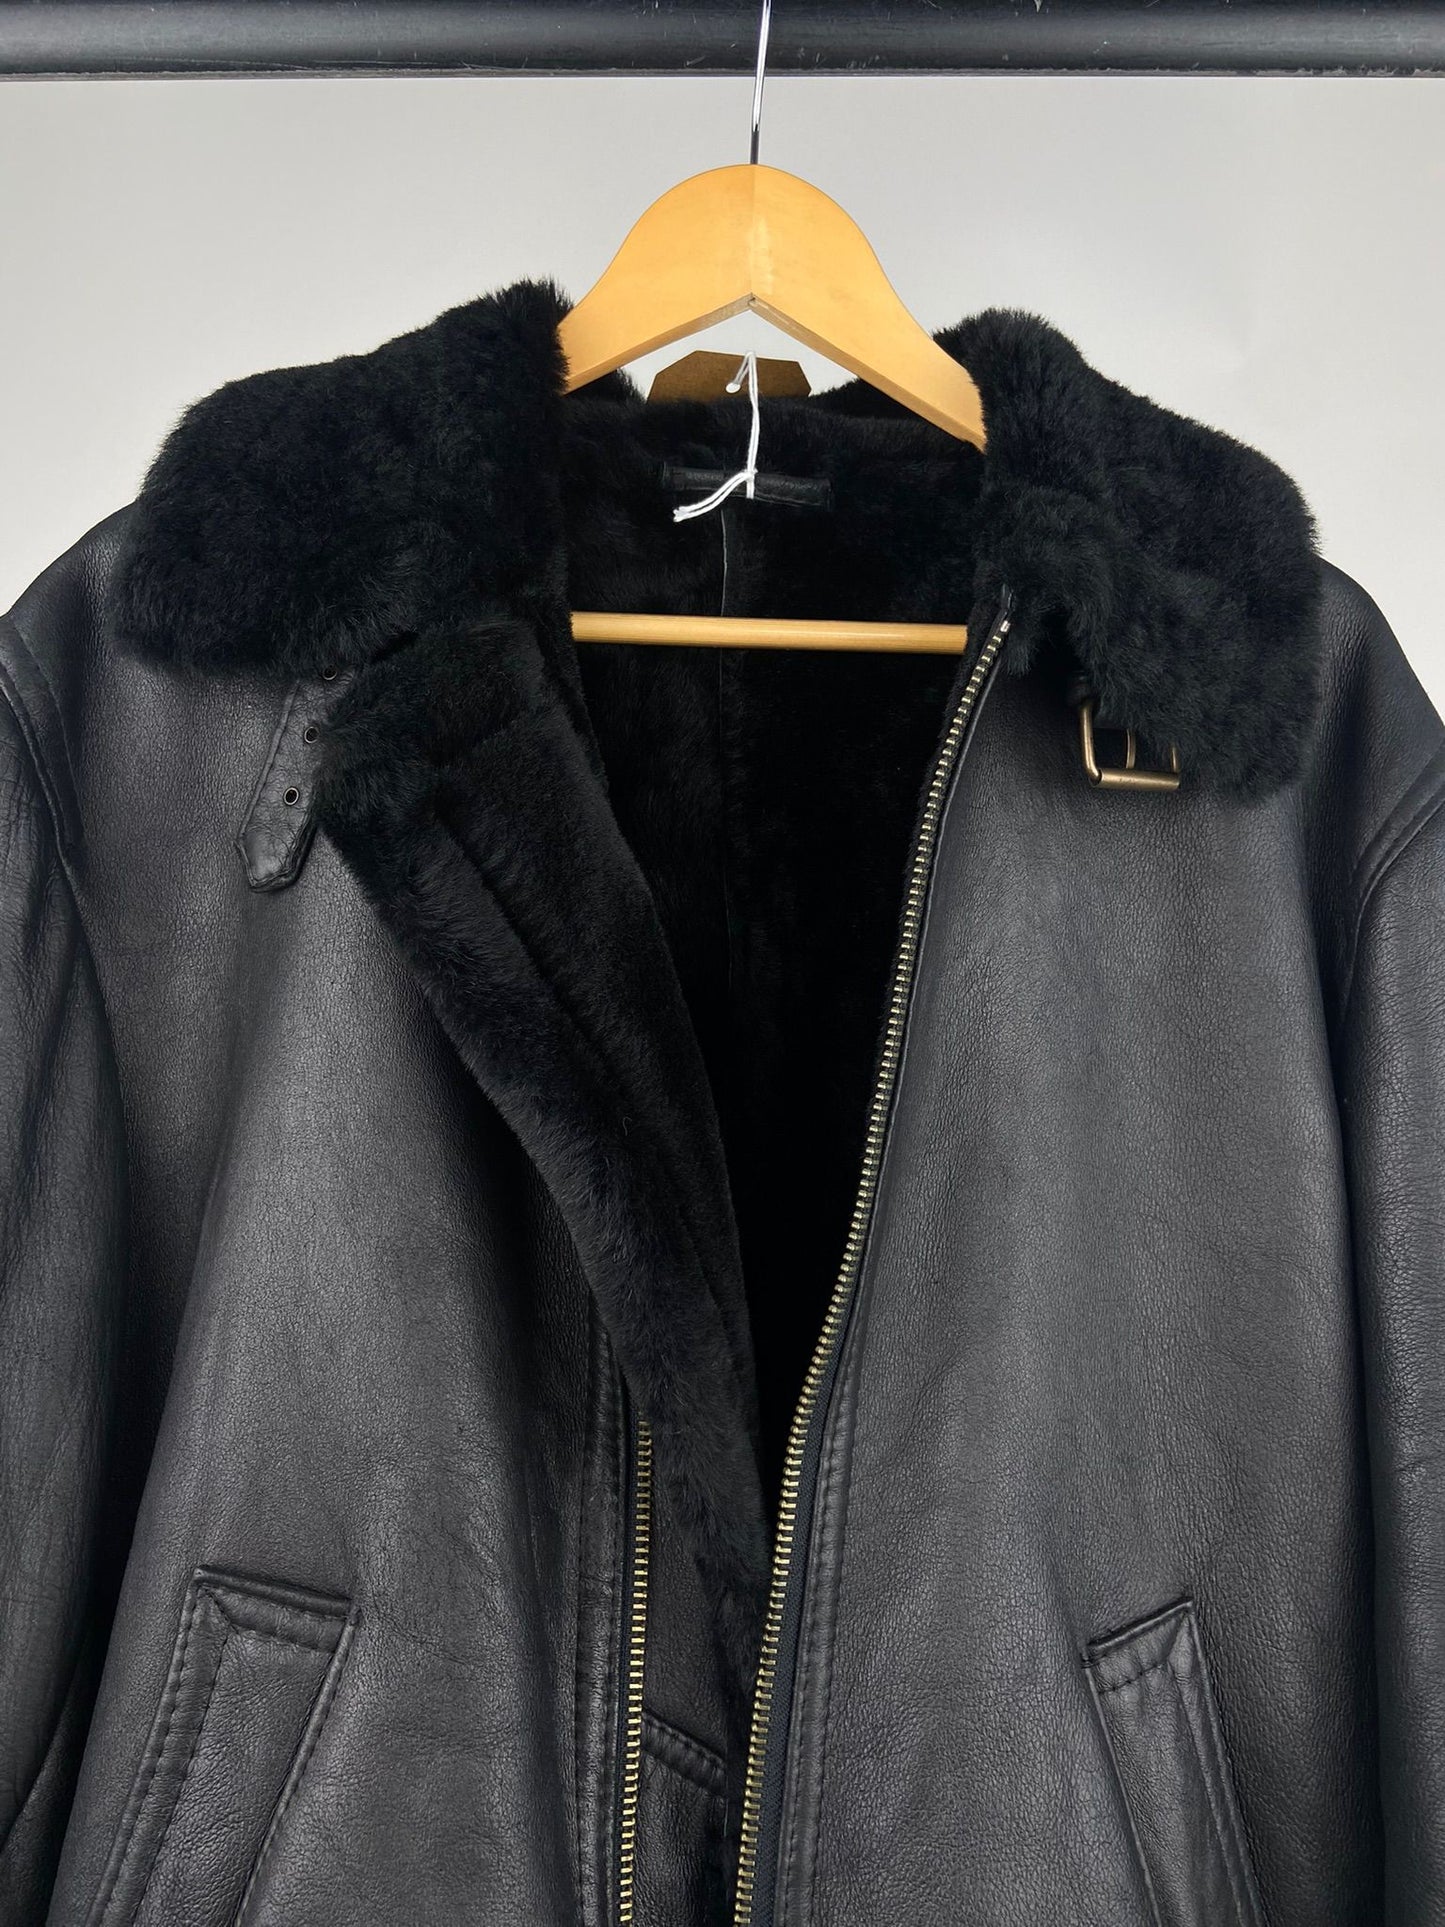 Vintage 80s Aviator Leather Jacket